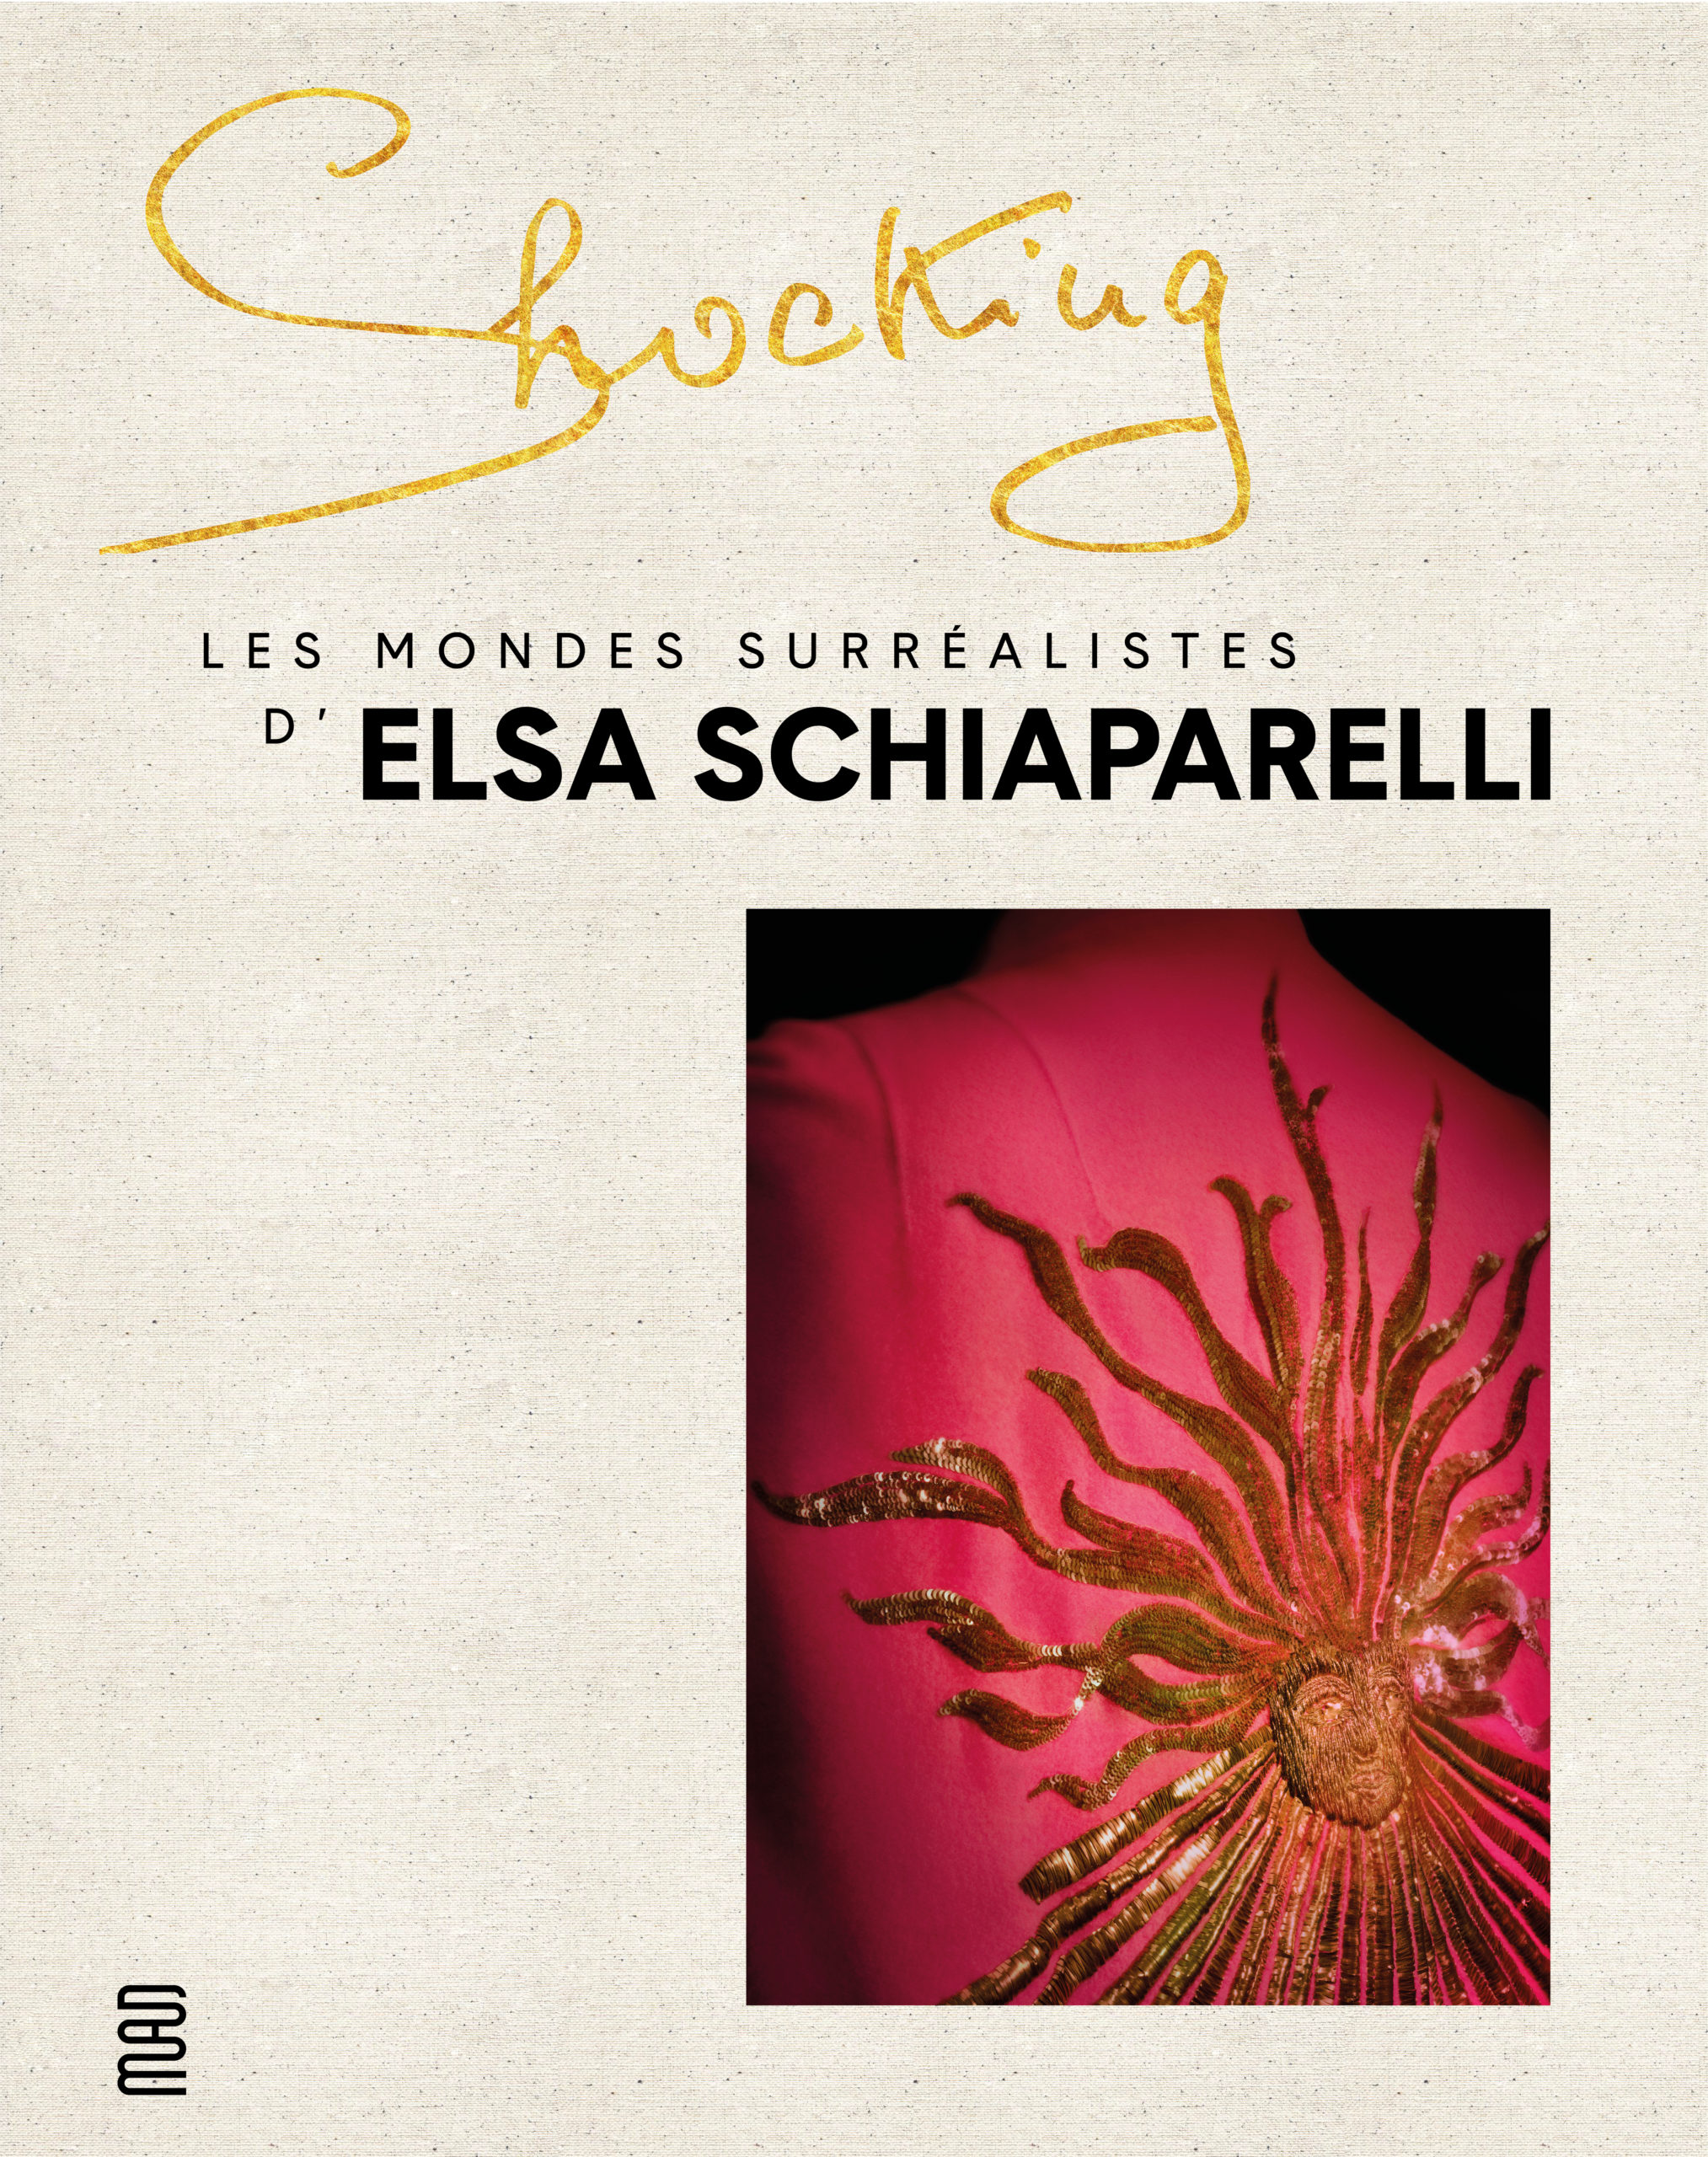 Shocking! Les mondes surréalistes d’Elsa Schiaparelli